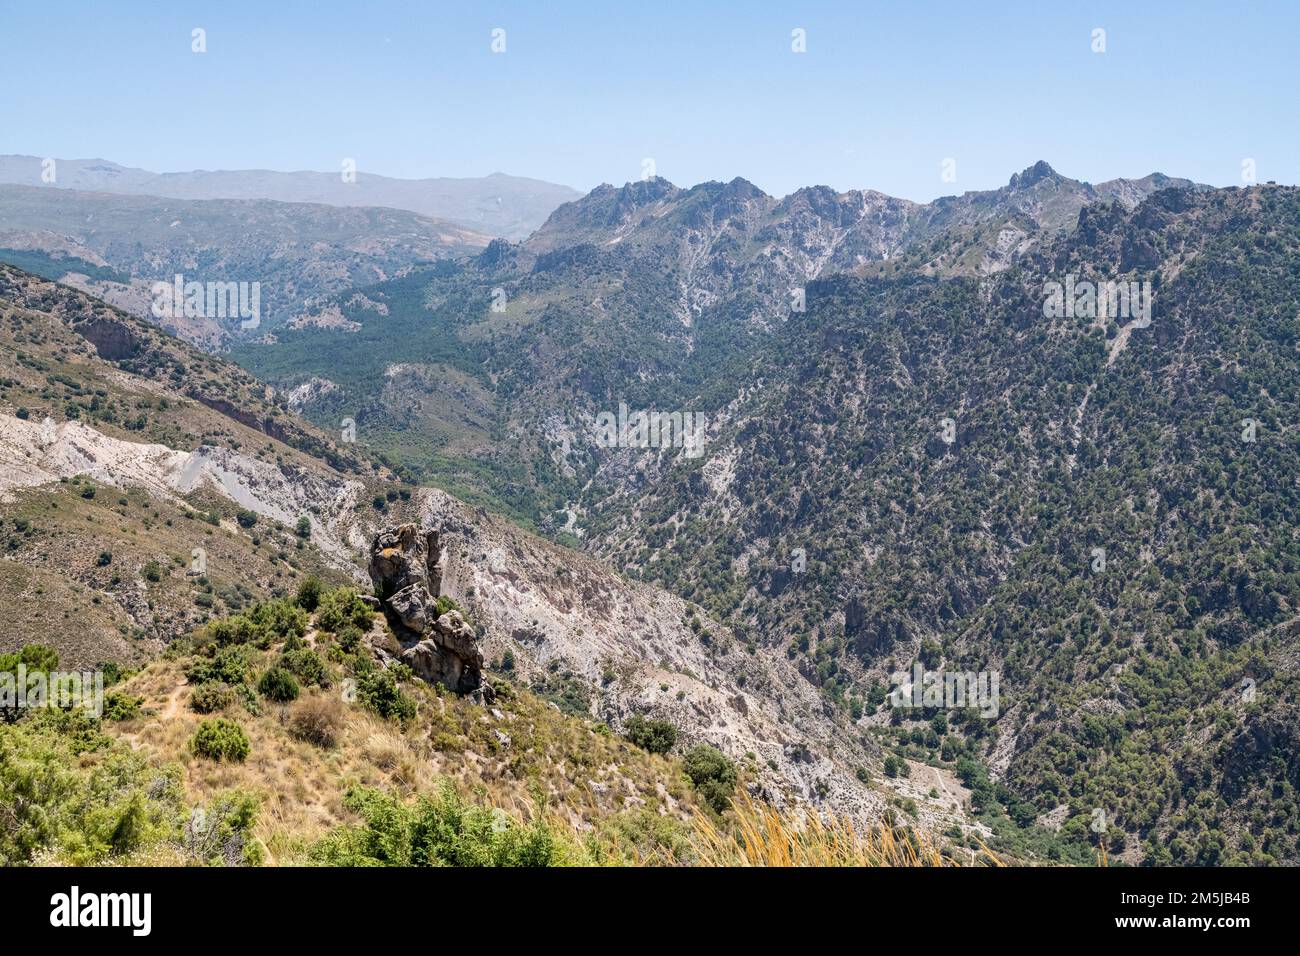 La région de randonnée de Collado Sevilla dans la chaîne de montagnes de la Sierra Nevada en Andalousie, Espagne Banque D'Images